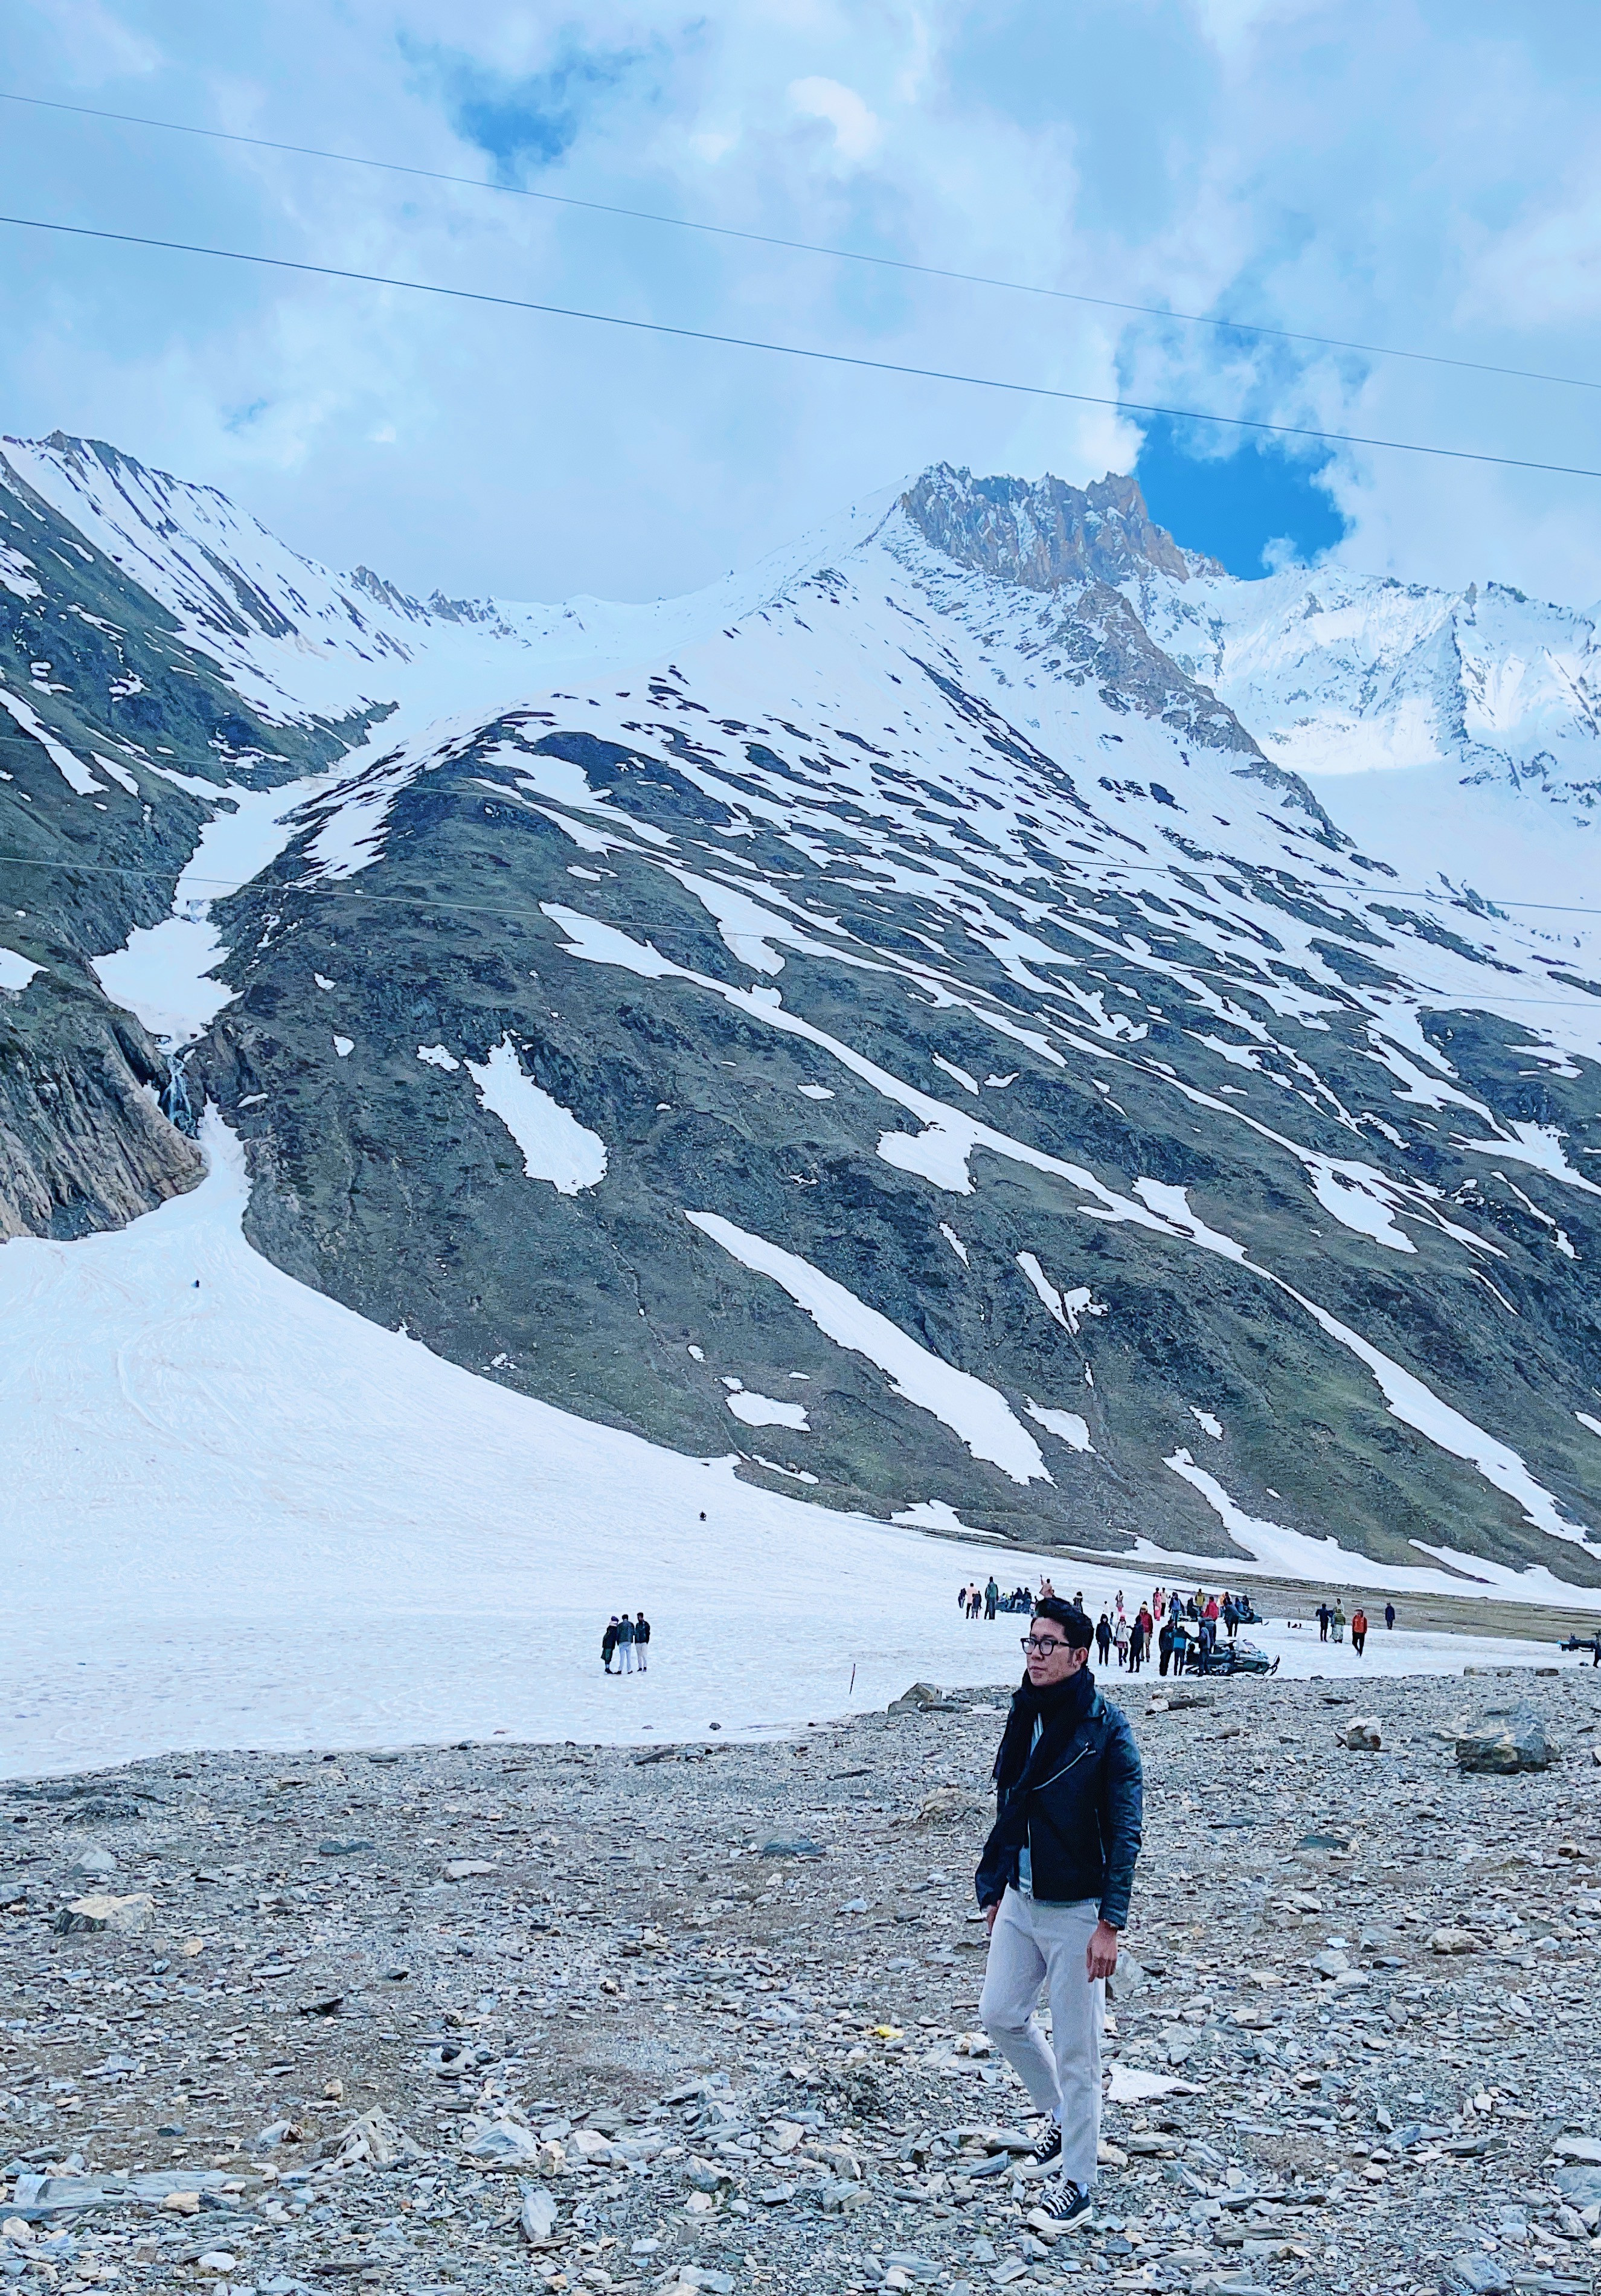 Hành trình đến Ladakh, băng qua những ngọn núi tuyết lạnh thấu xương của dãy Himalaya